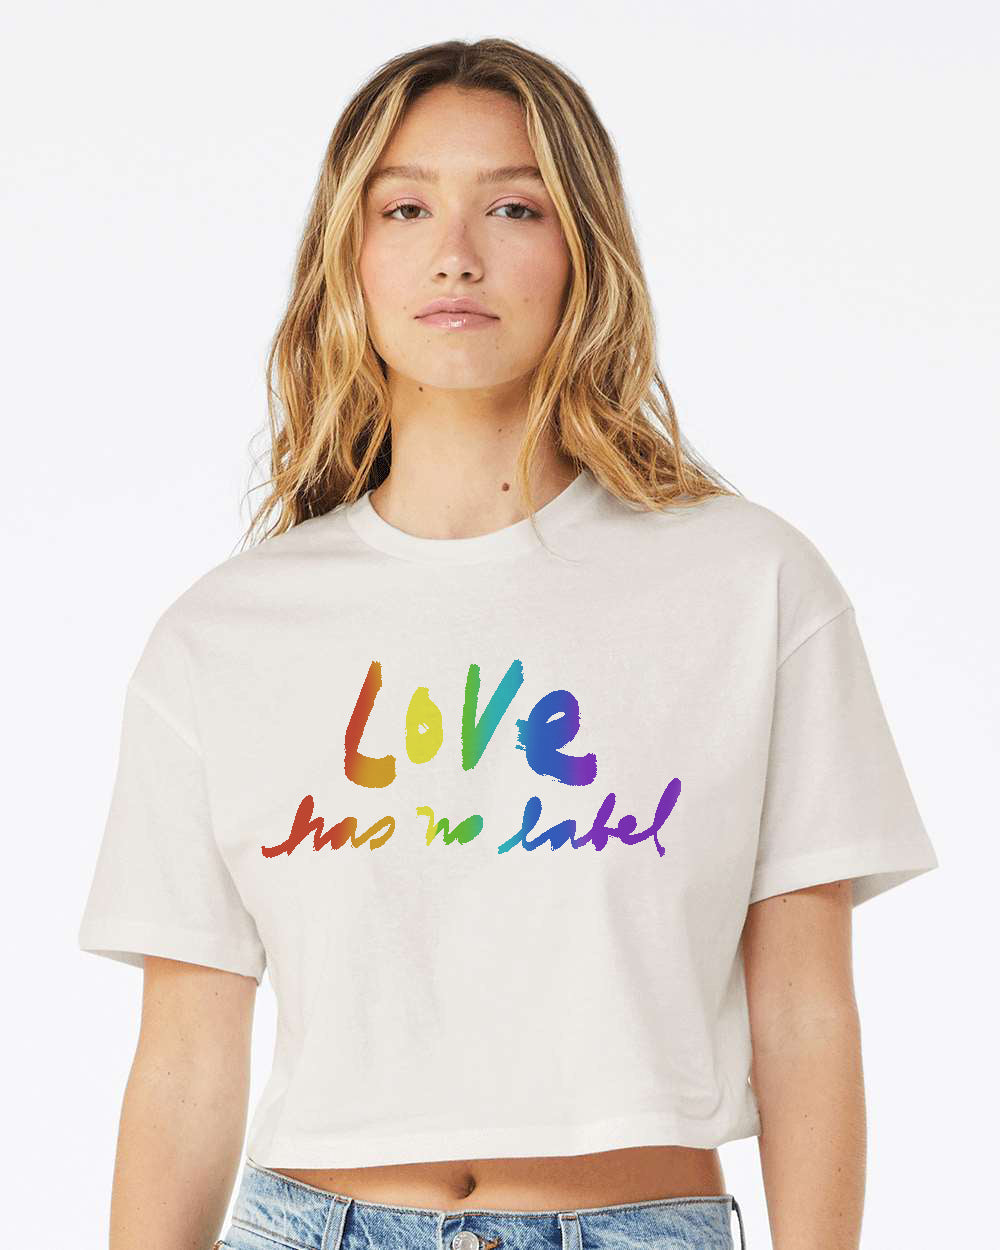 Love has no label : Women's Crop Graphic Tee Silk Screen, Positive Message, Spread Joy, Inclusion